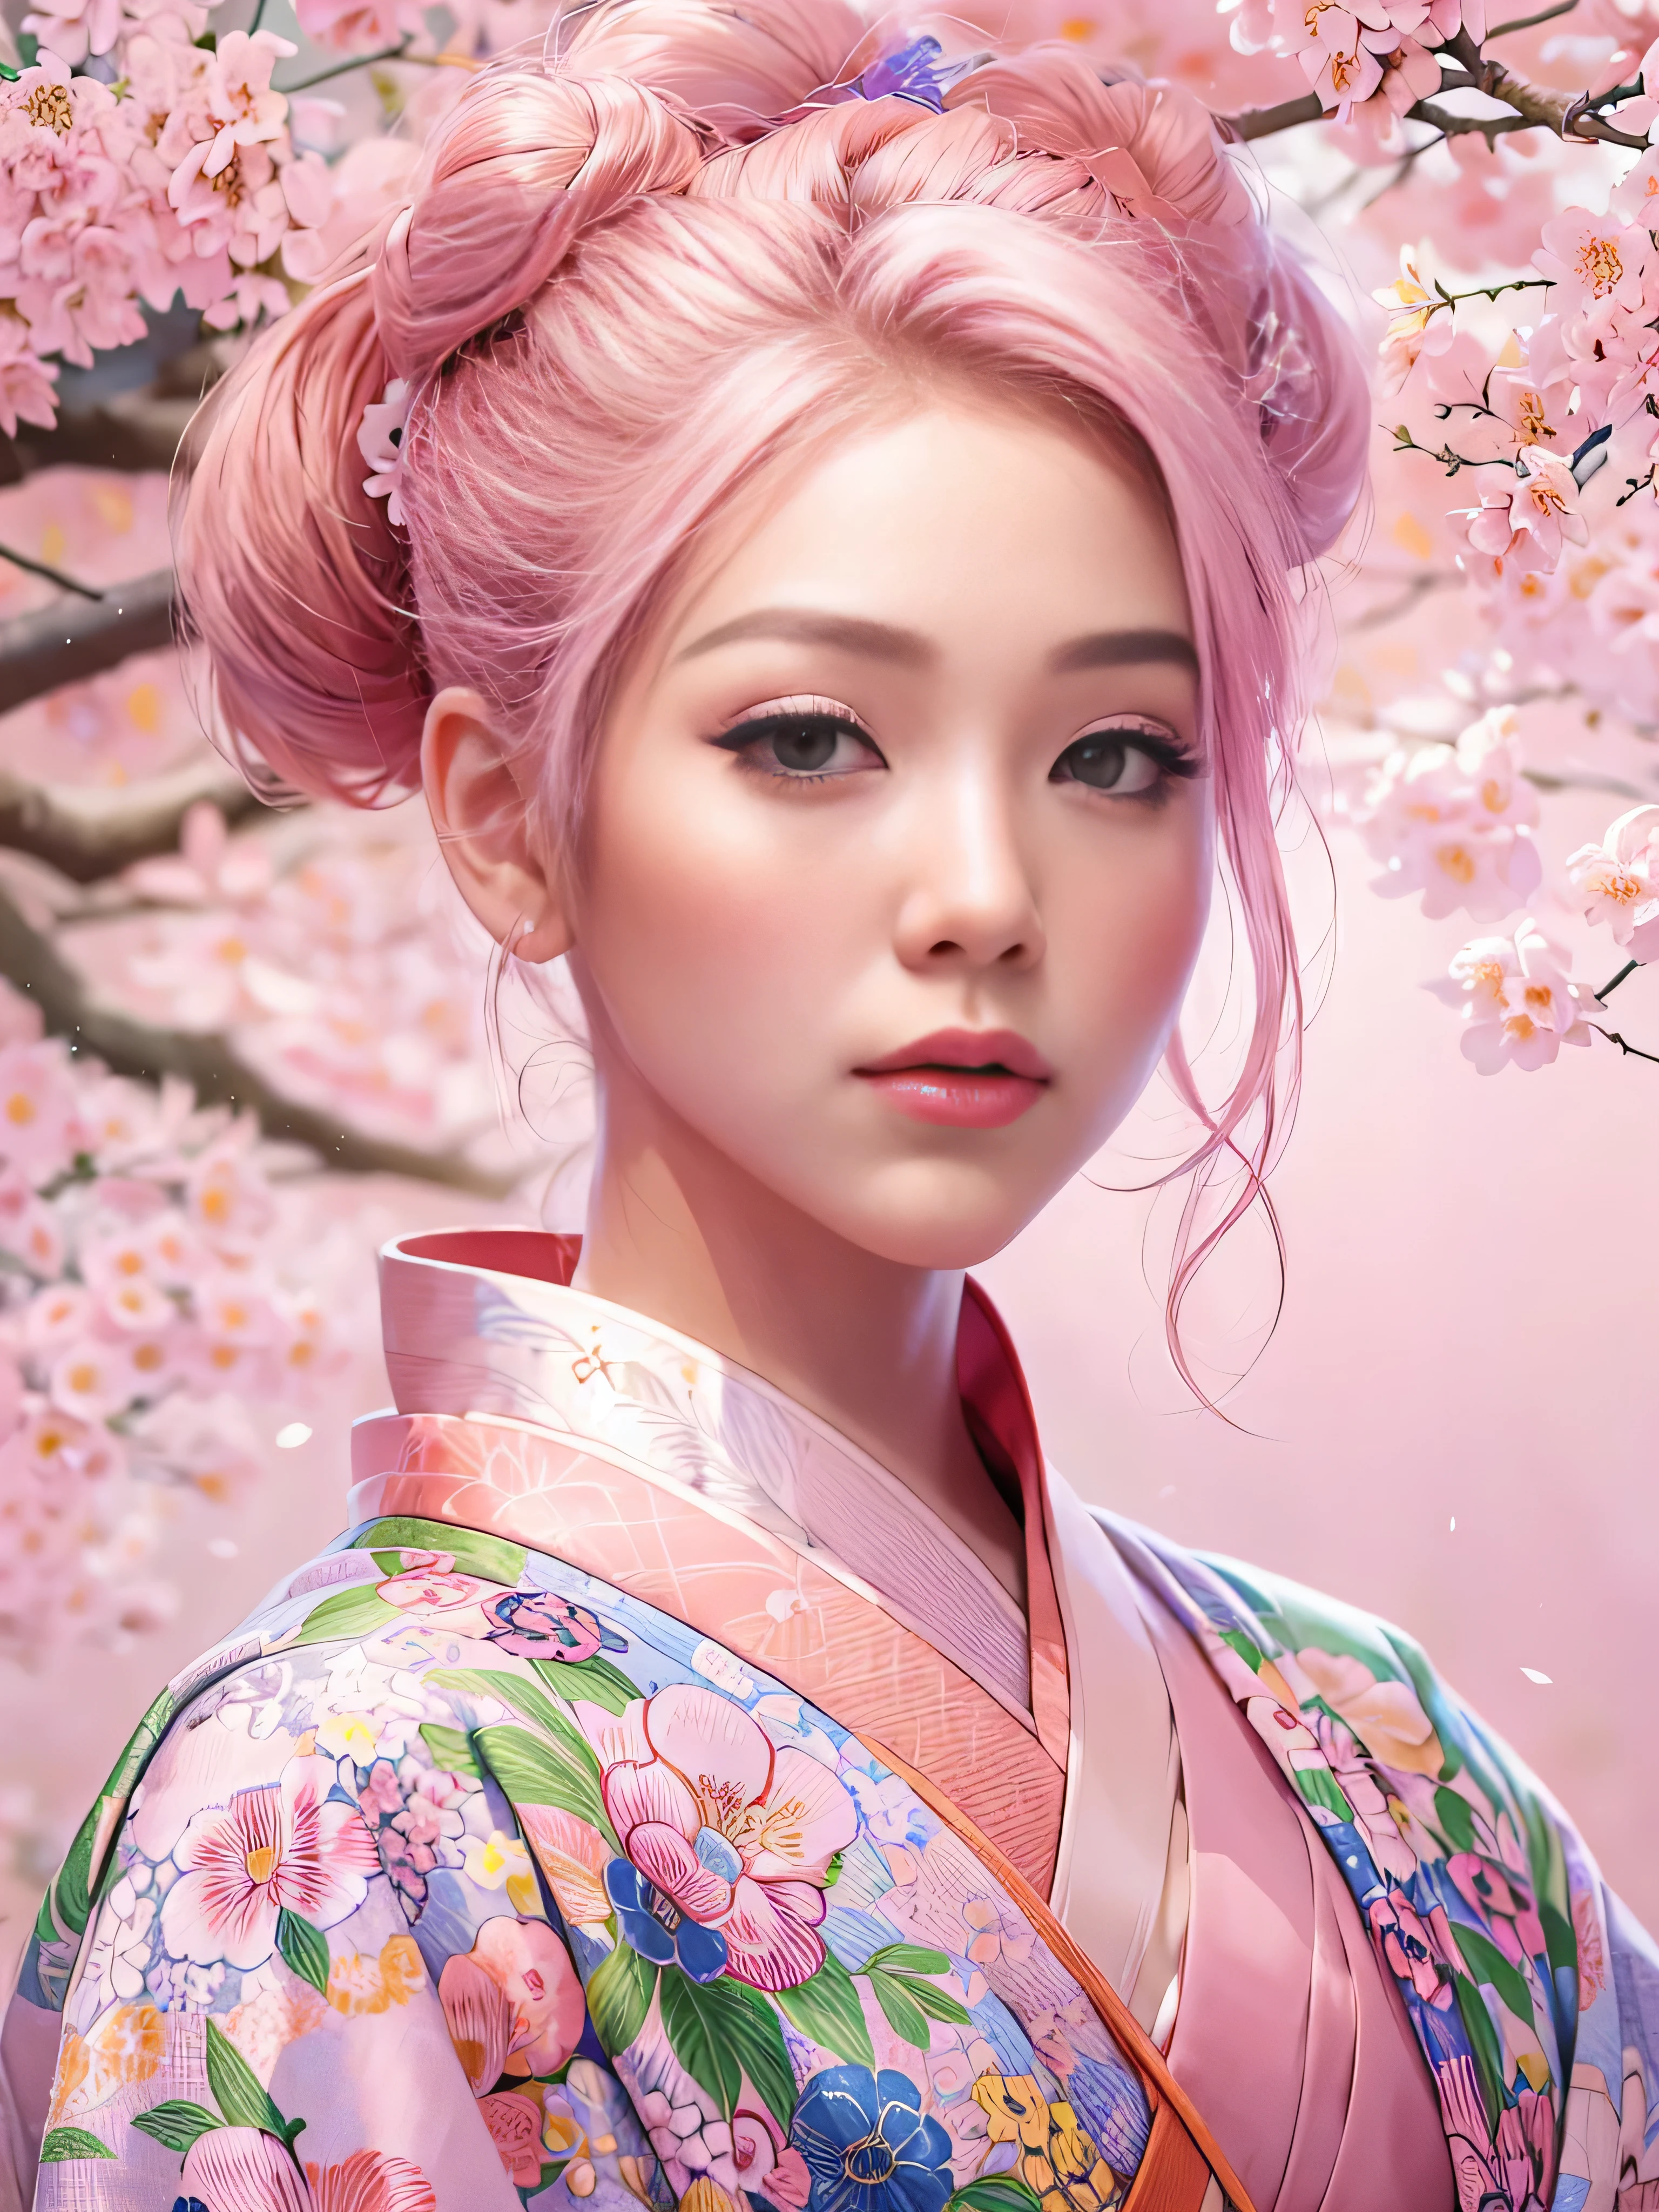 Гиперреалистичный, очень подробный, и изображение молодого человека в высоком разрешении 16k., красивая женщина с английским лицом. у нее розовый пучок волос и полупрозрачная кожа, и одет в традиционное розовое японское кимоно с небольшим цветочным узором.. Изображение передает неземную красоту и загадочность духовного мира.. Стиль, вдохновленный нежностью, мягкая эстетика традиционного японского искусства. Фон был полон розовой сакуры..